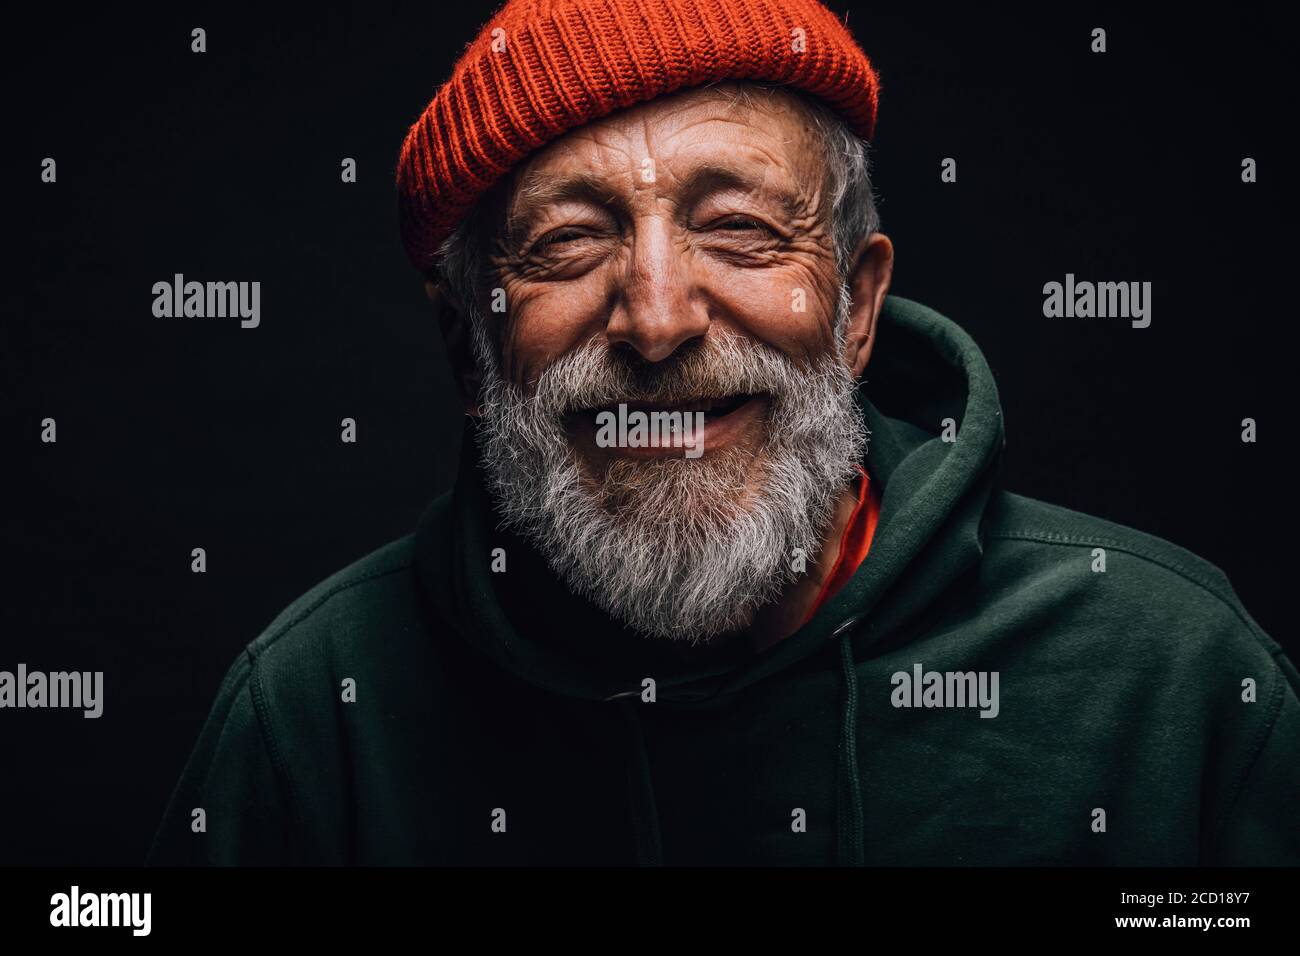 Primer plano retrato de feliz hombre optimista de 70 años con cara arrugada sonriente, vestido con sombrero naranja hipster y sudadera con capucha verde, aislado sobre la ba negra Foto de stock